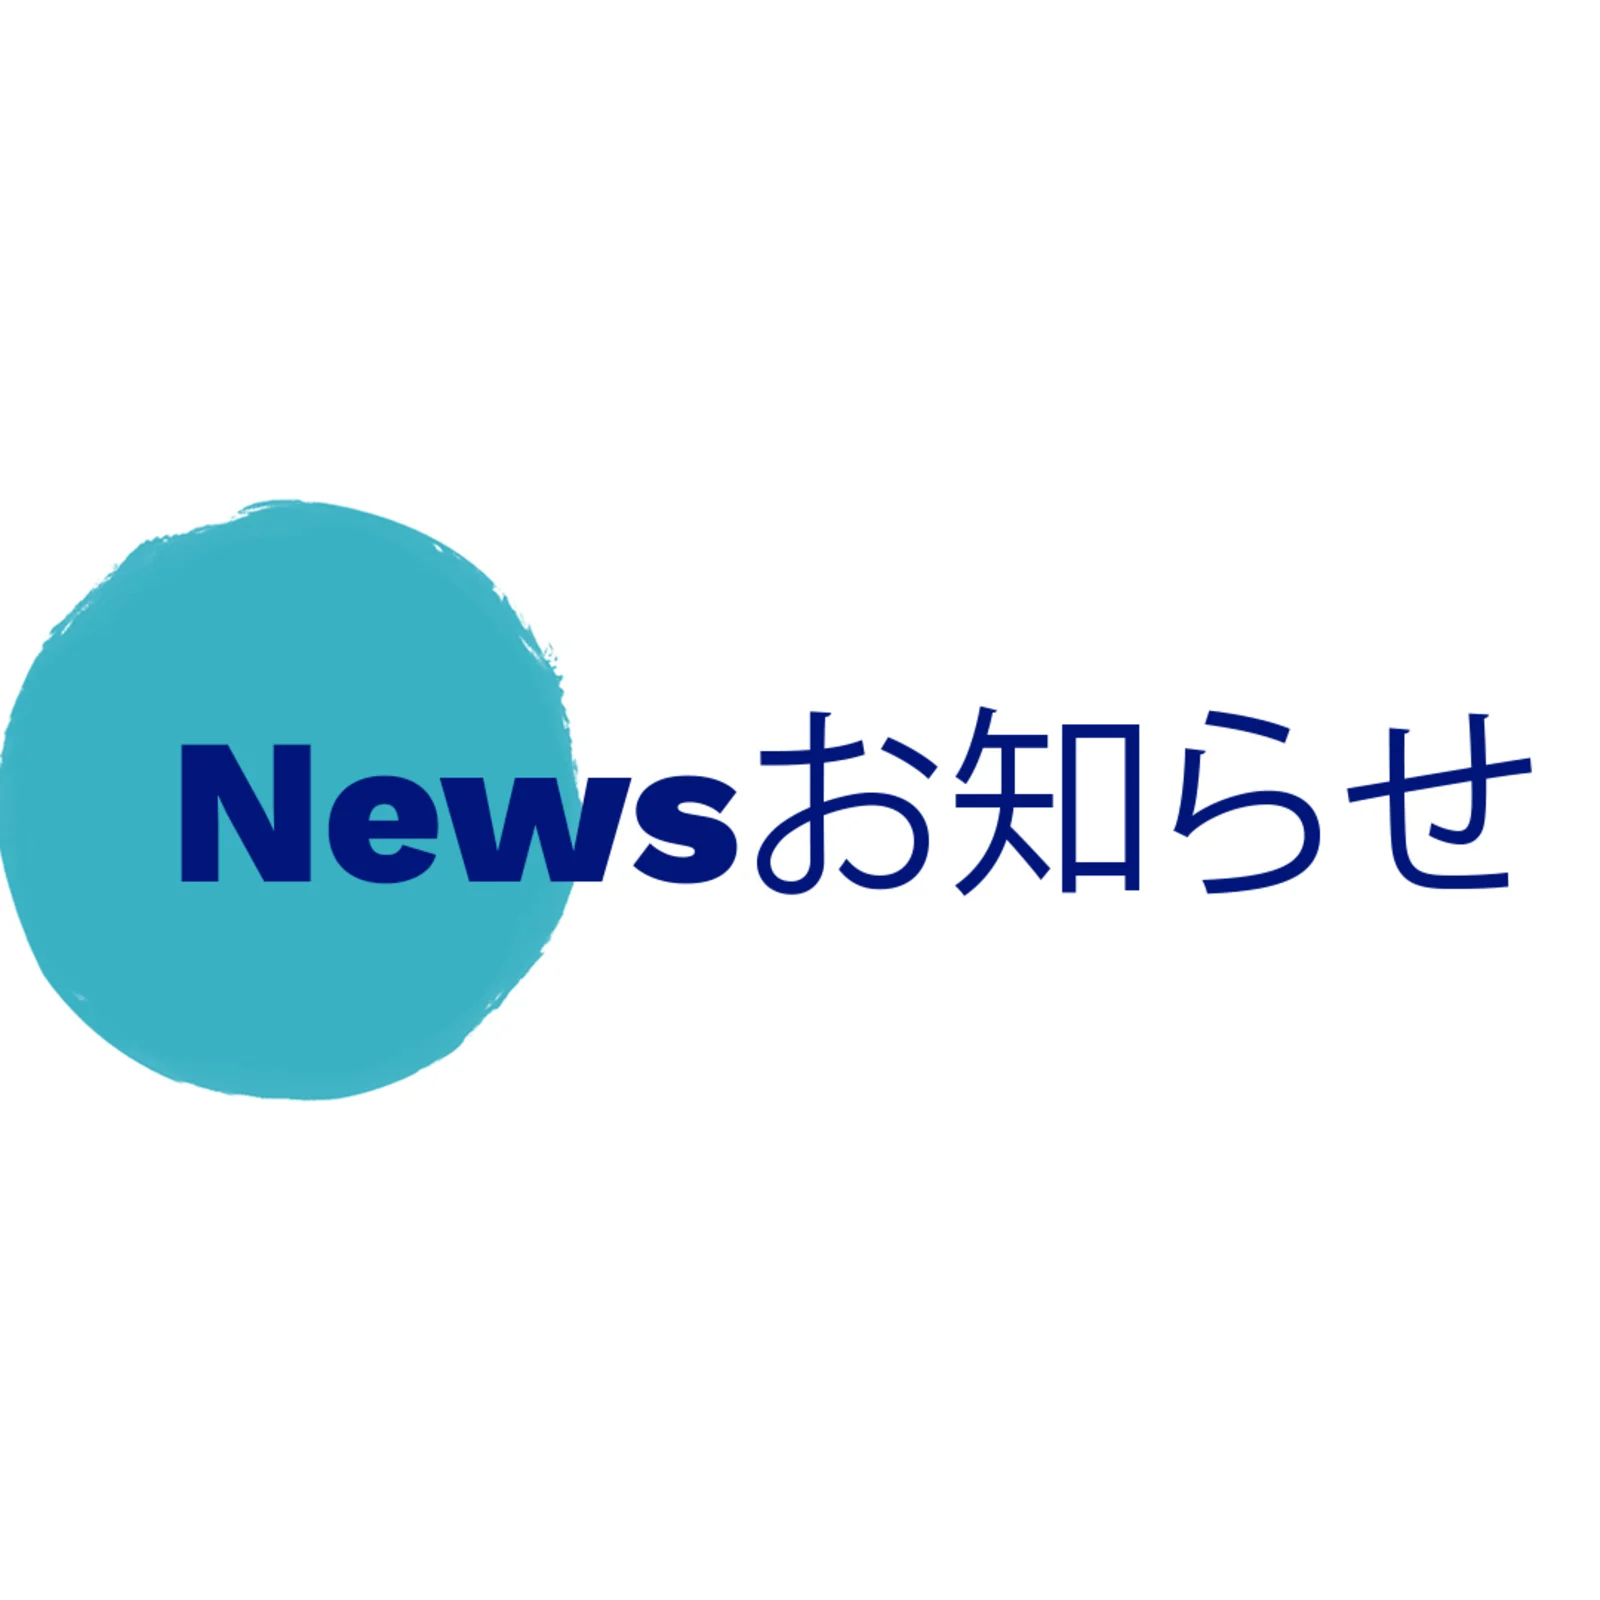 ニュースお知らせ2_JA-JP